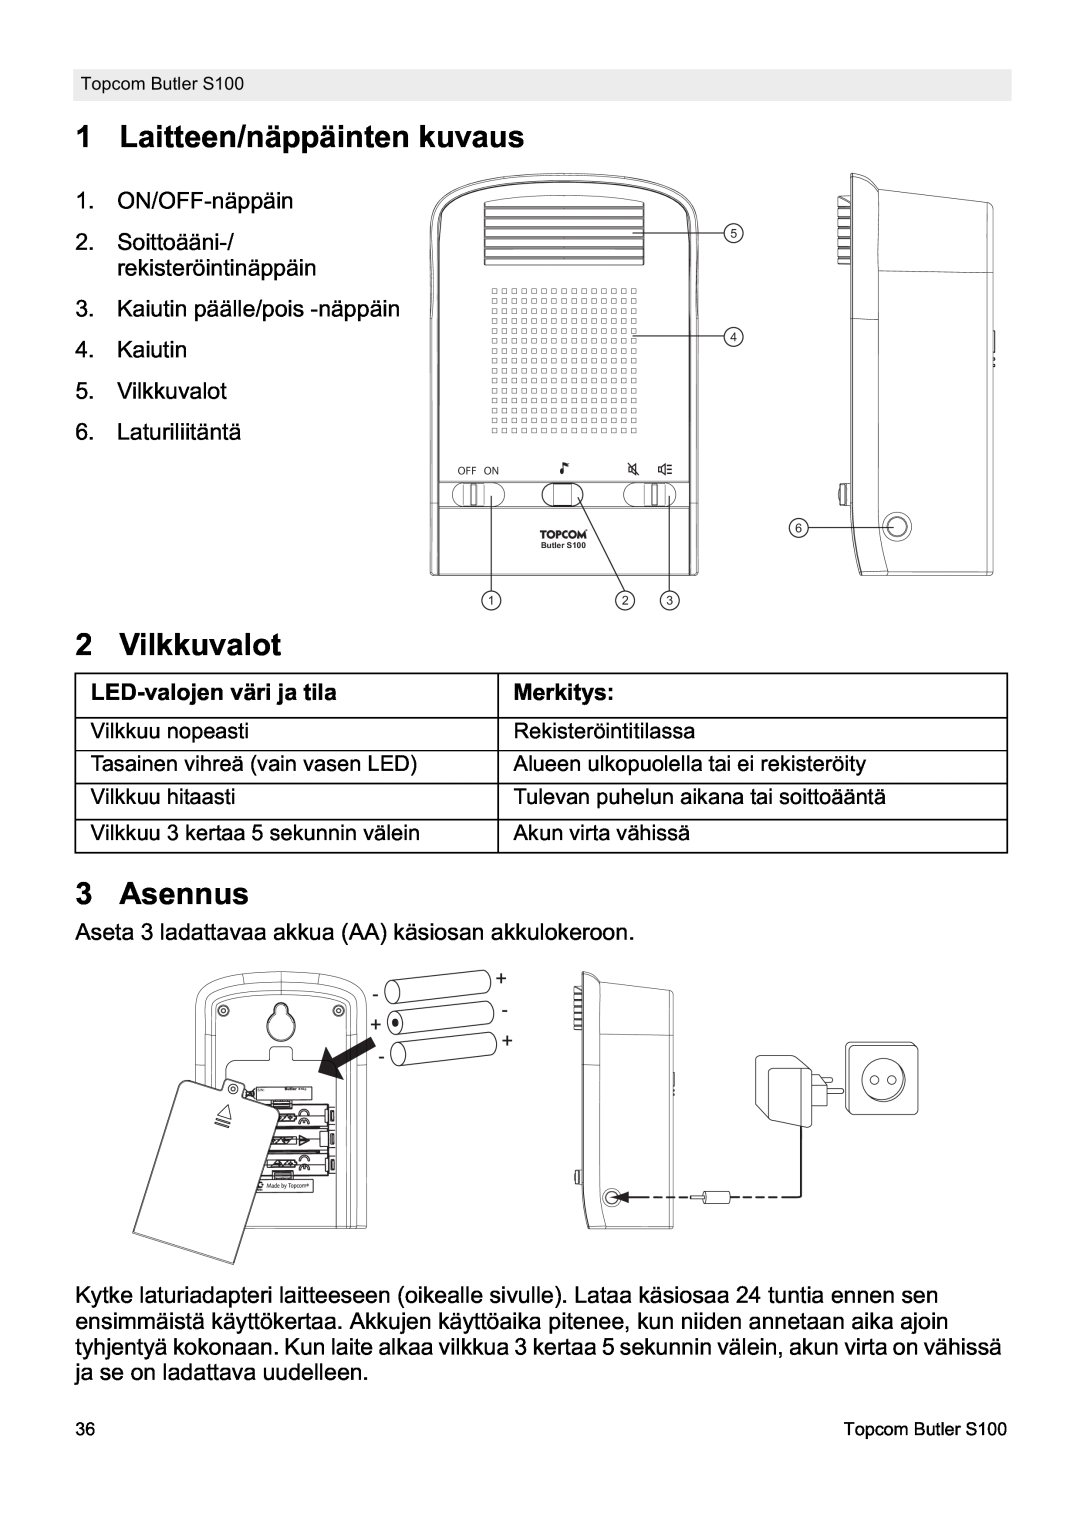 Topcom S100 manual do utilizador Laitteen/näppäinten kuvaus, Vilkkuvalot, Asennus, LED-valojen väri ja tila, Merkitys 